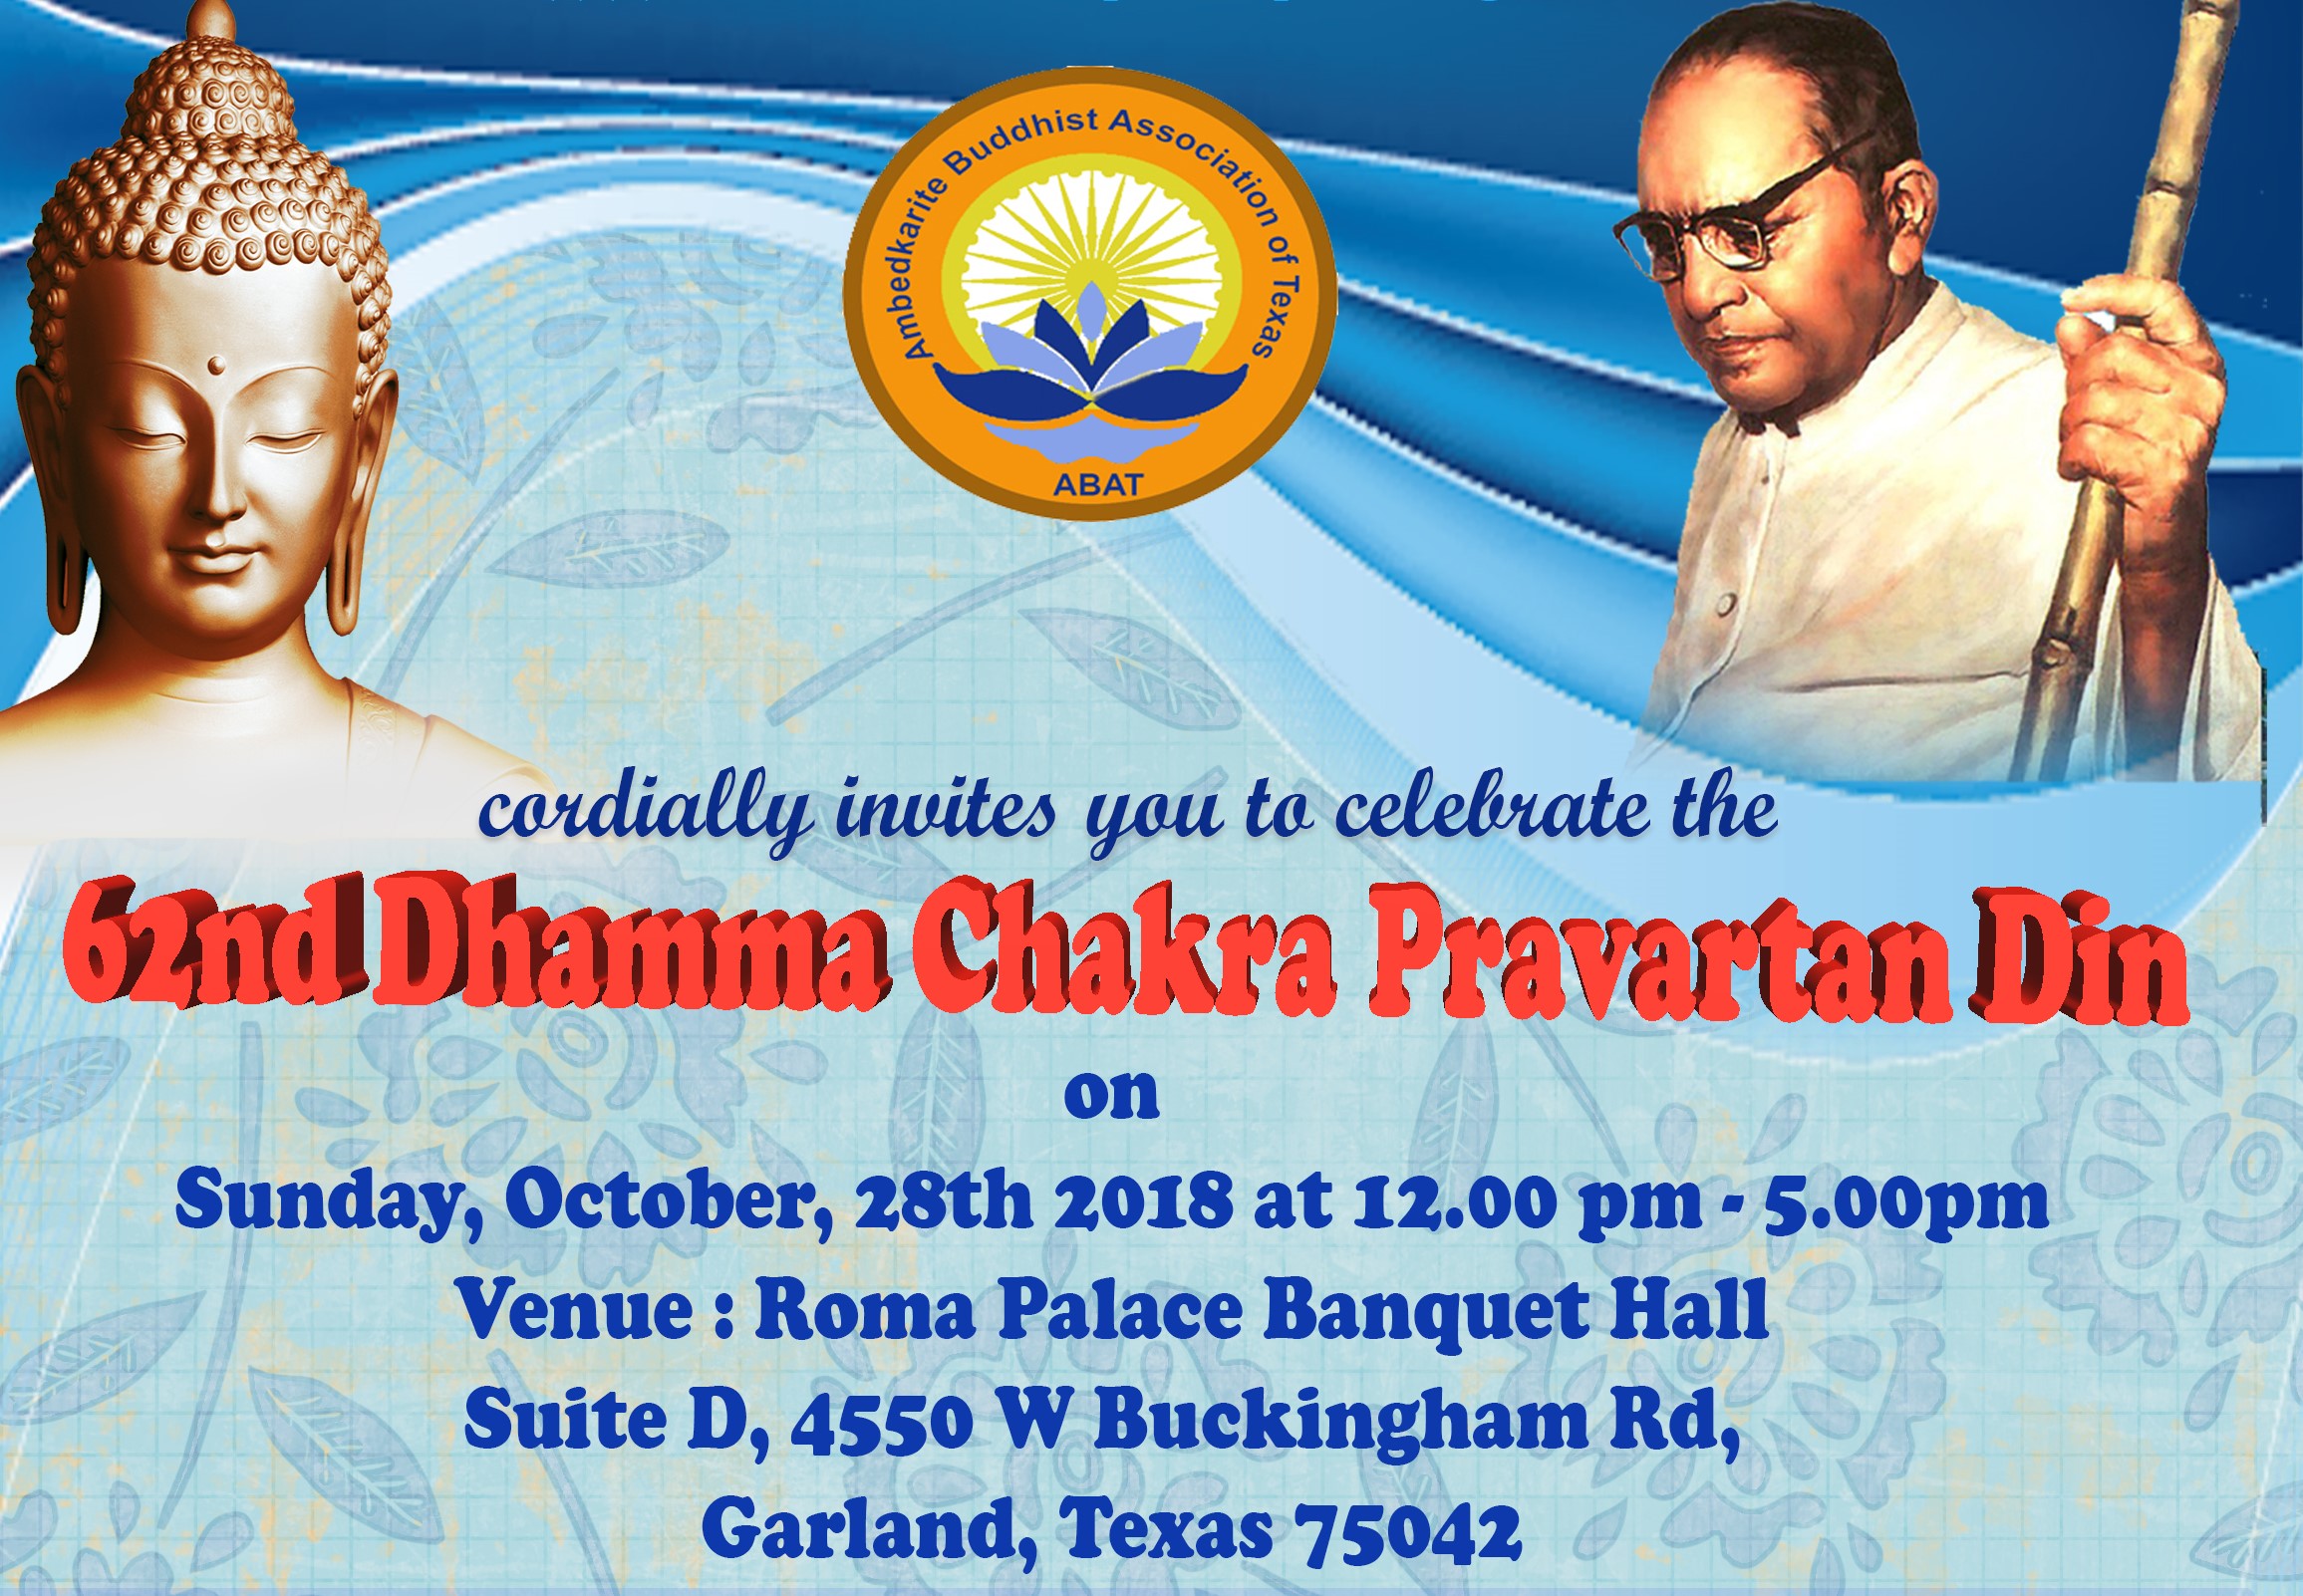 62nd Dhamma Chakra Pravartan Din – Ambedkarite Buddhist Association of Texas